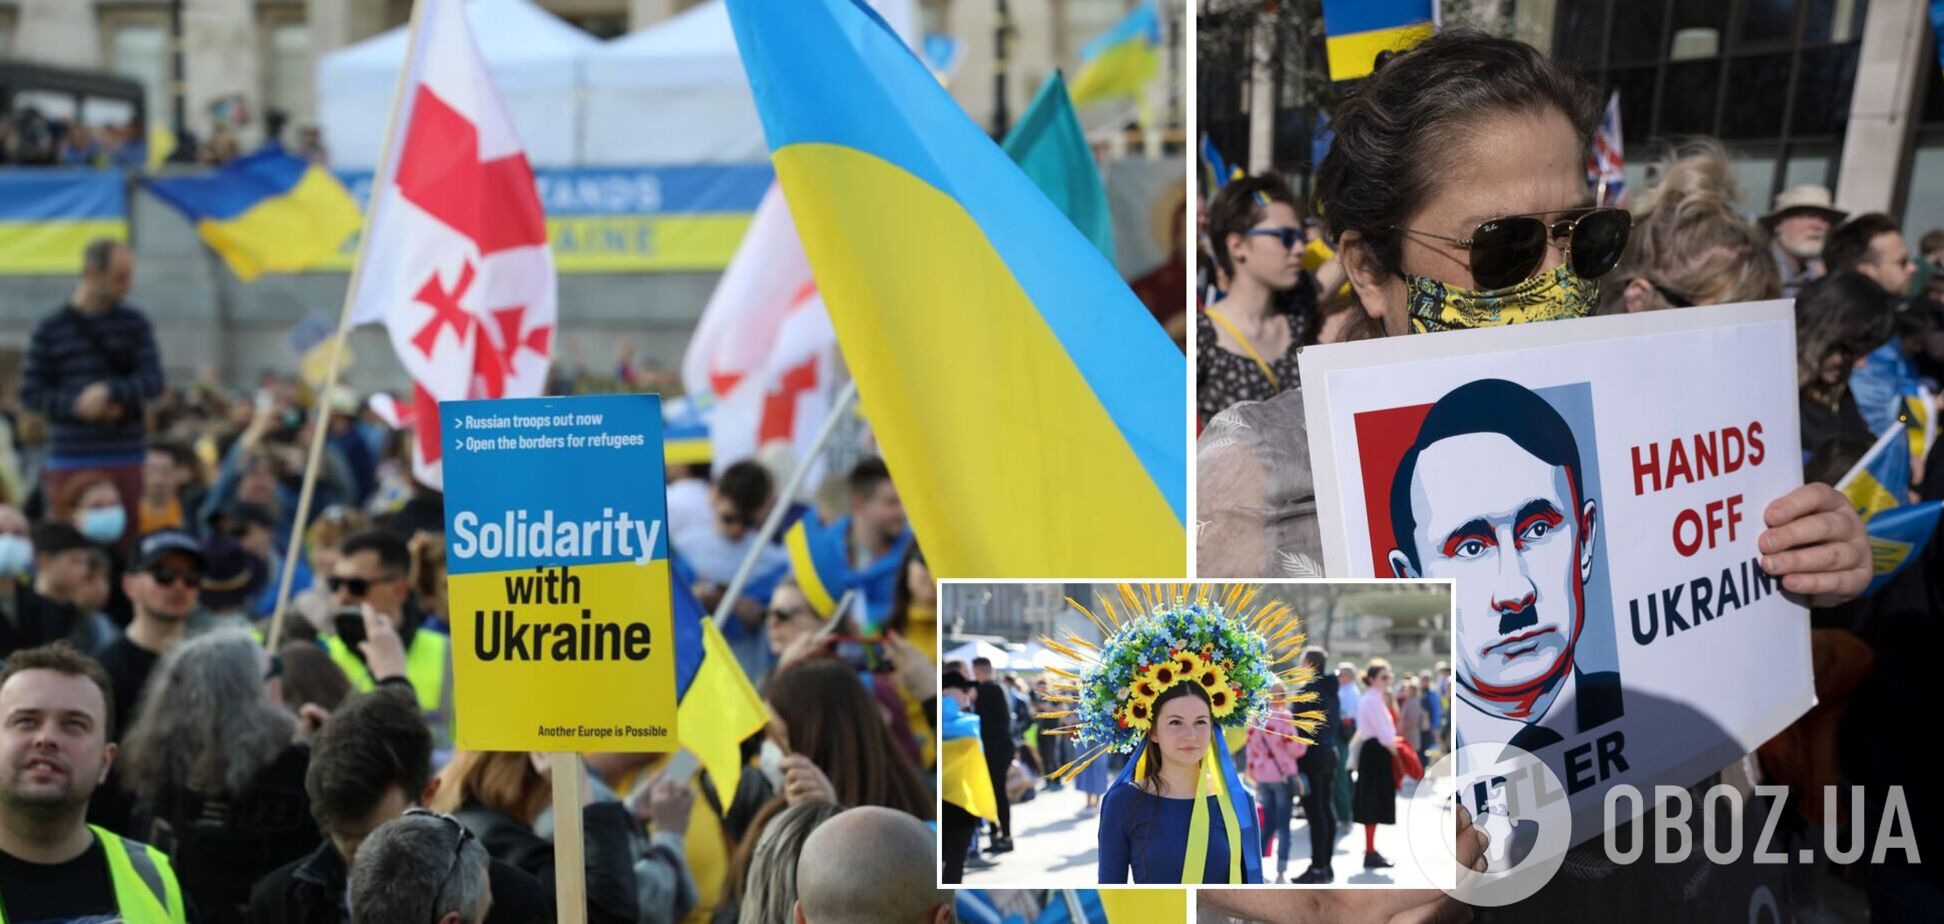 'We stand with Ukraine!': десятки тысяч человек вышли на митинг в поддержку Украины в Лондоне. Фото и видео